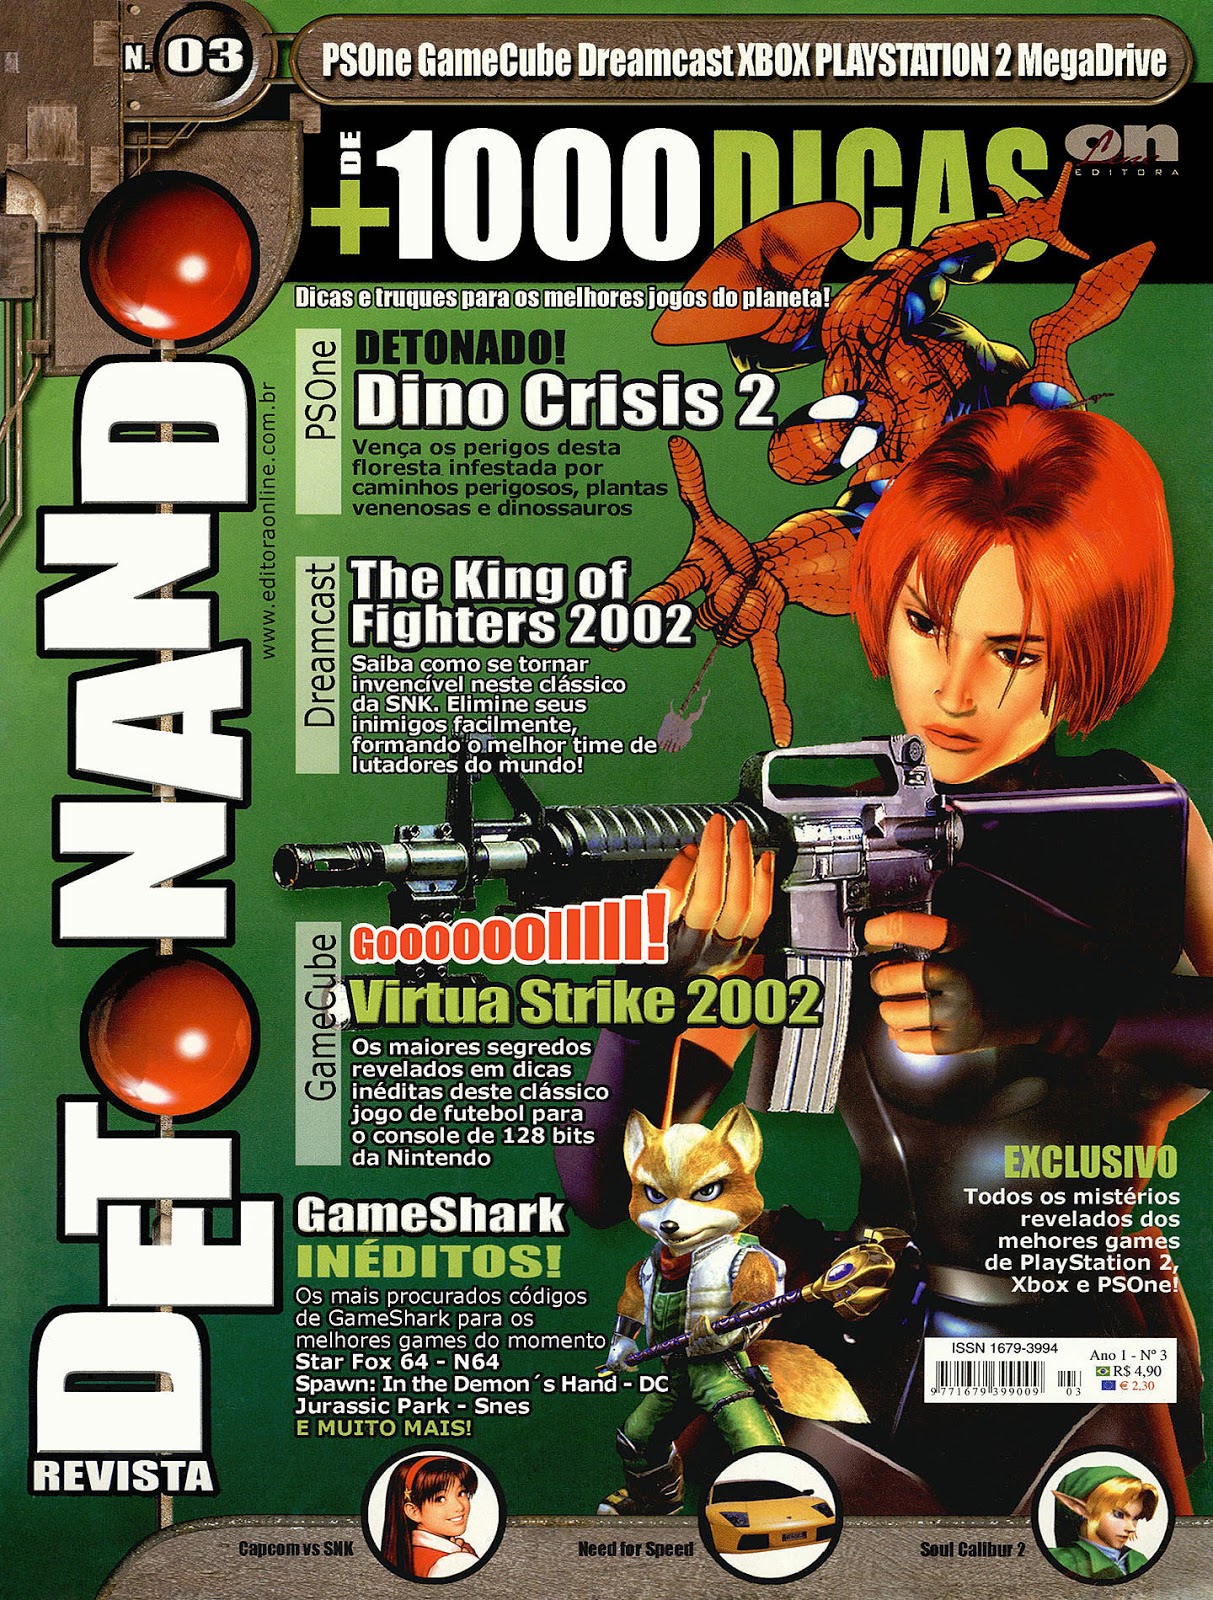 PDF) Revista gamestation especial 6 - Detonado Chrono Cross.pdf